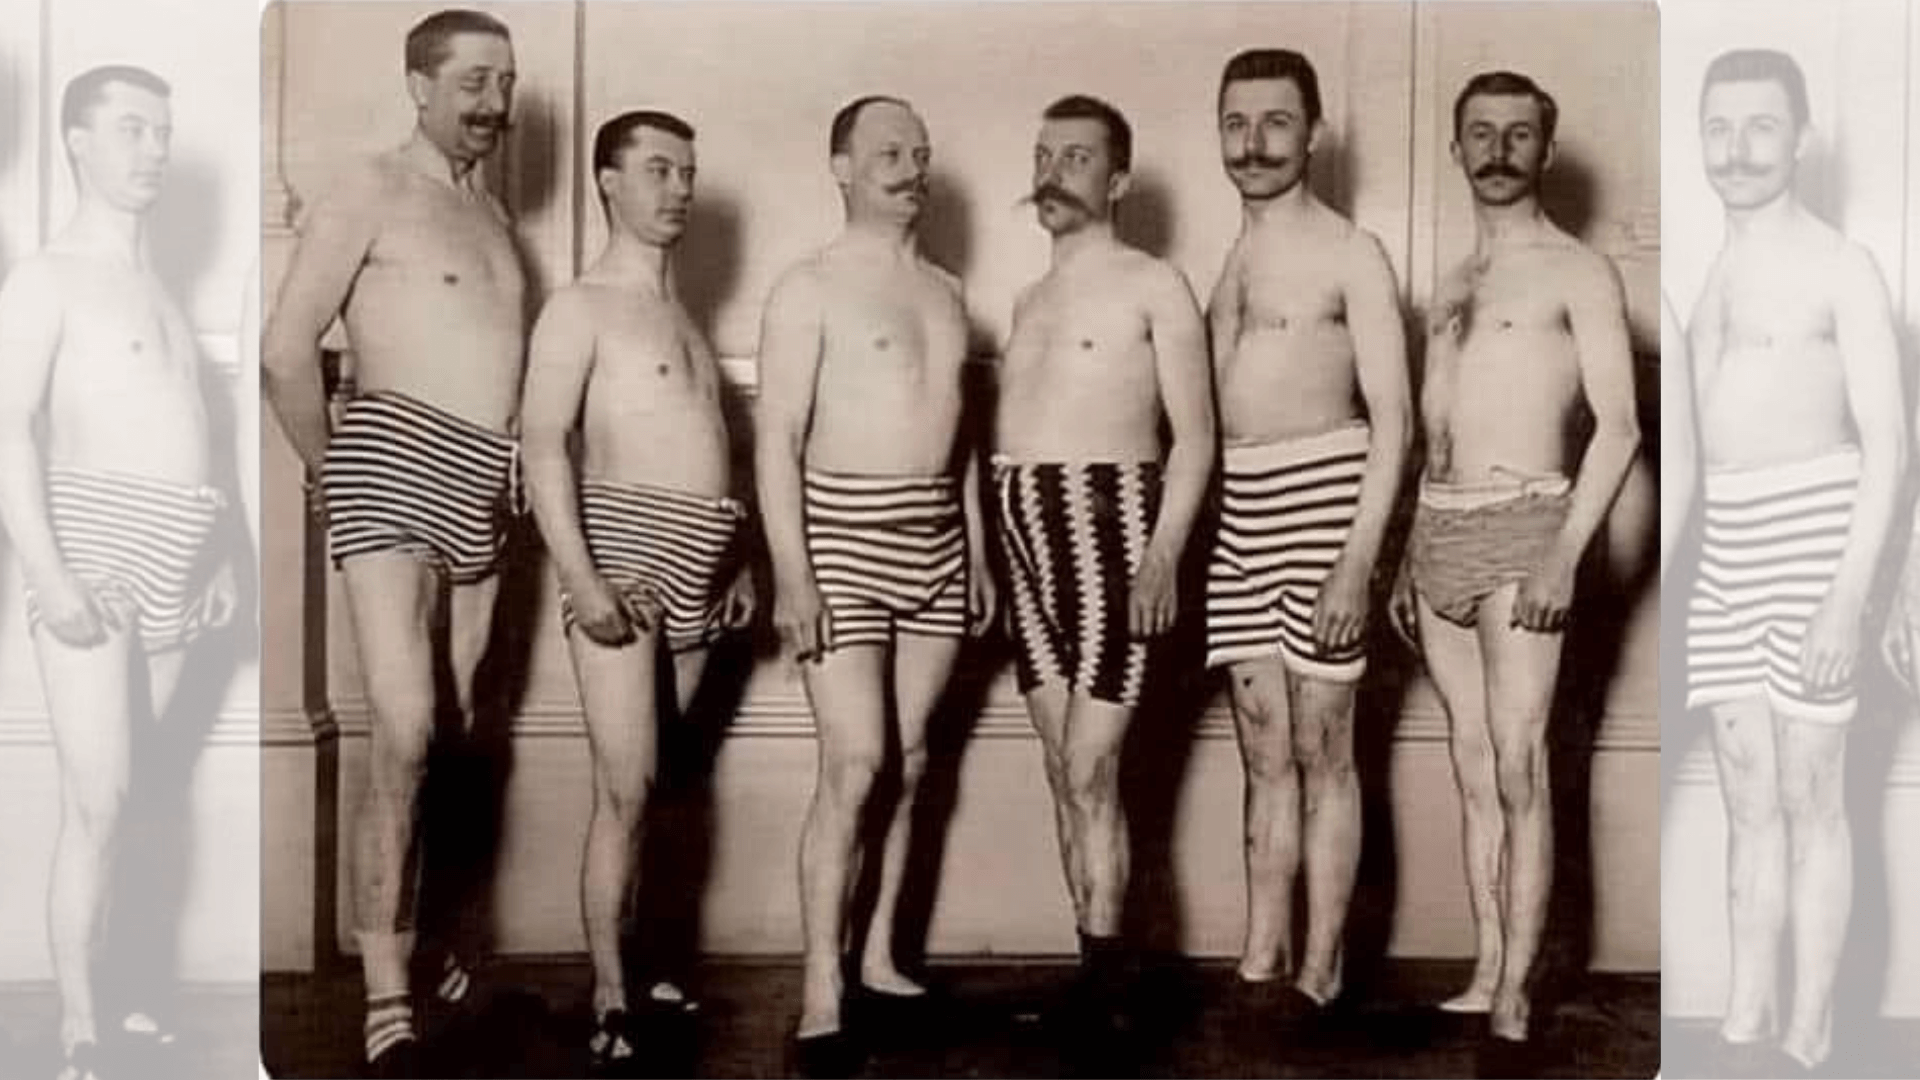 Bild von sechs Männern in Badehosen